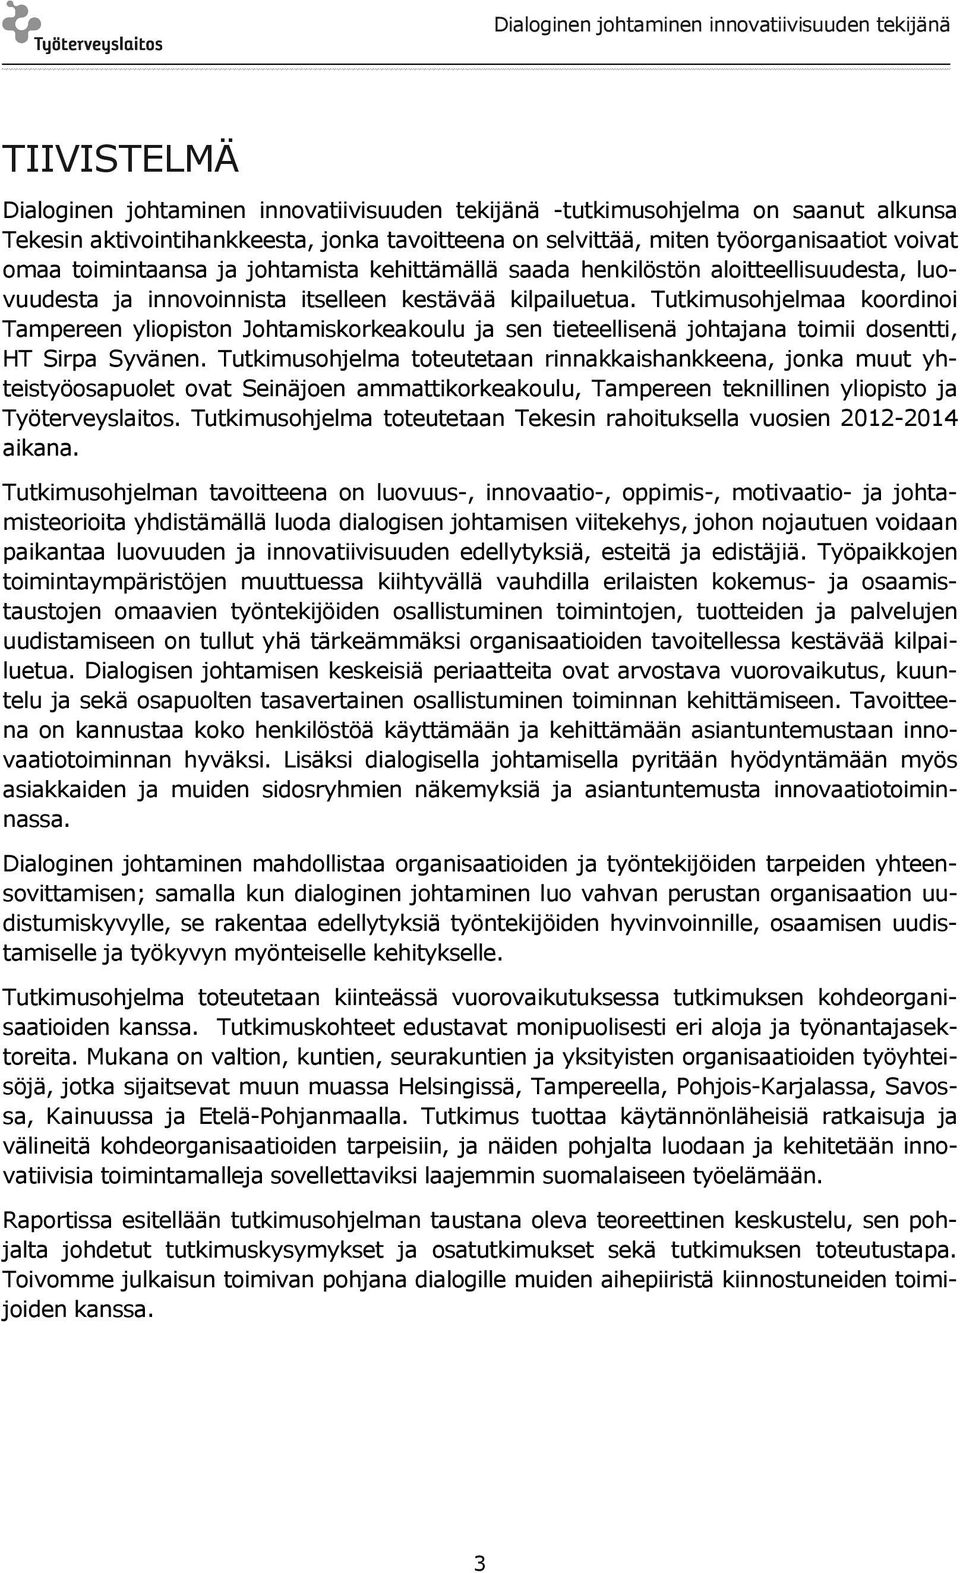 Tutkimusohjelmaa koordinoi Tampereen yliopiston Johtamiskorkeakoulu ja sen tieteellisenä johtajana toimii dosentti, HT Sirpa Syvänen.